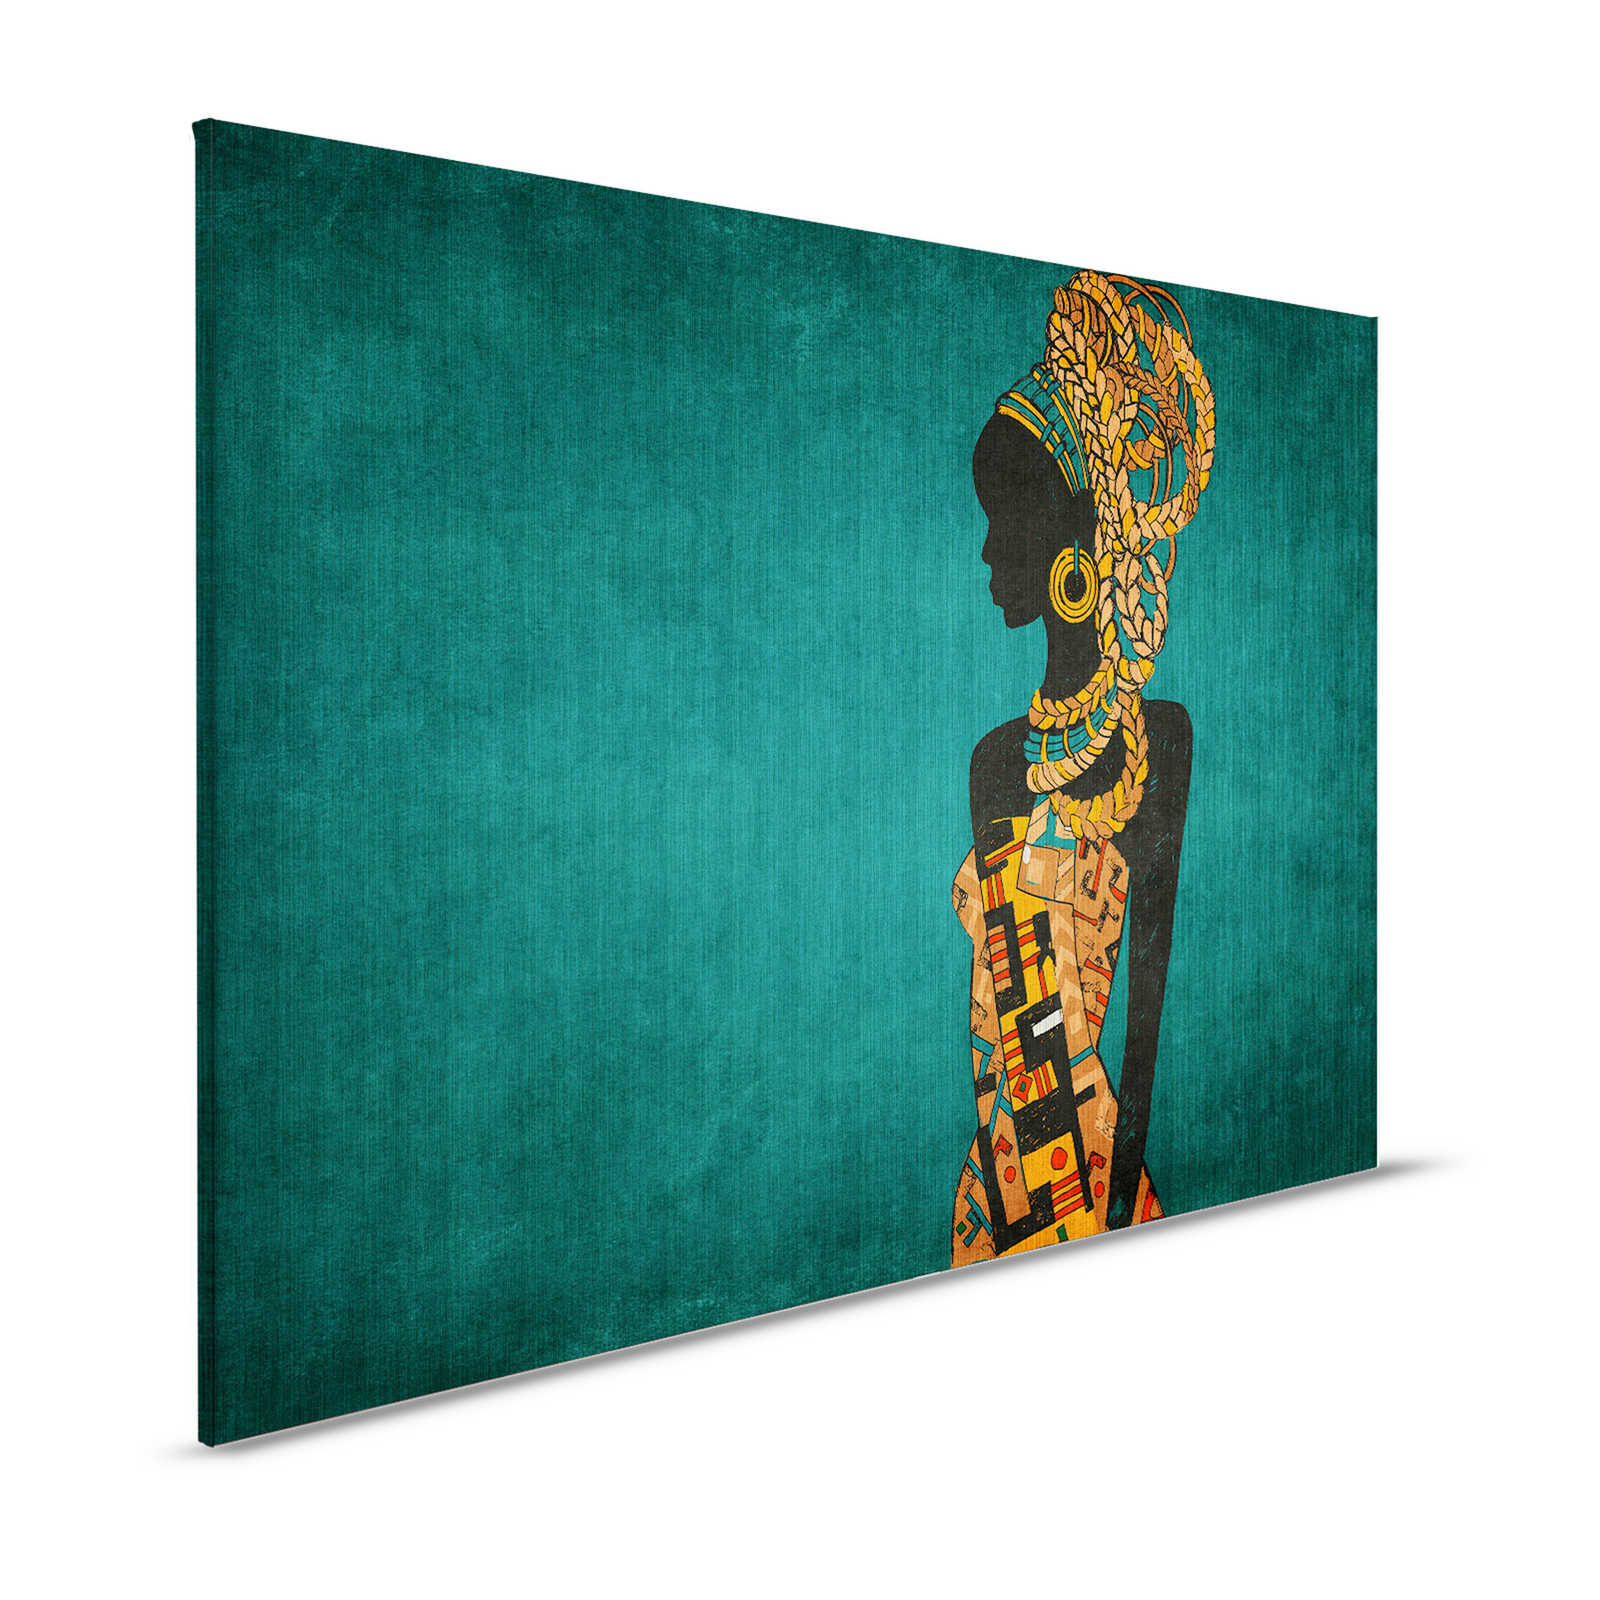 Nairobi 2 - African Style toile pétrole avec silhouette de femme - 1,20 m x 0,80 m
